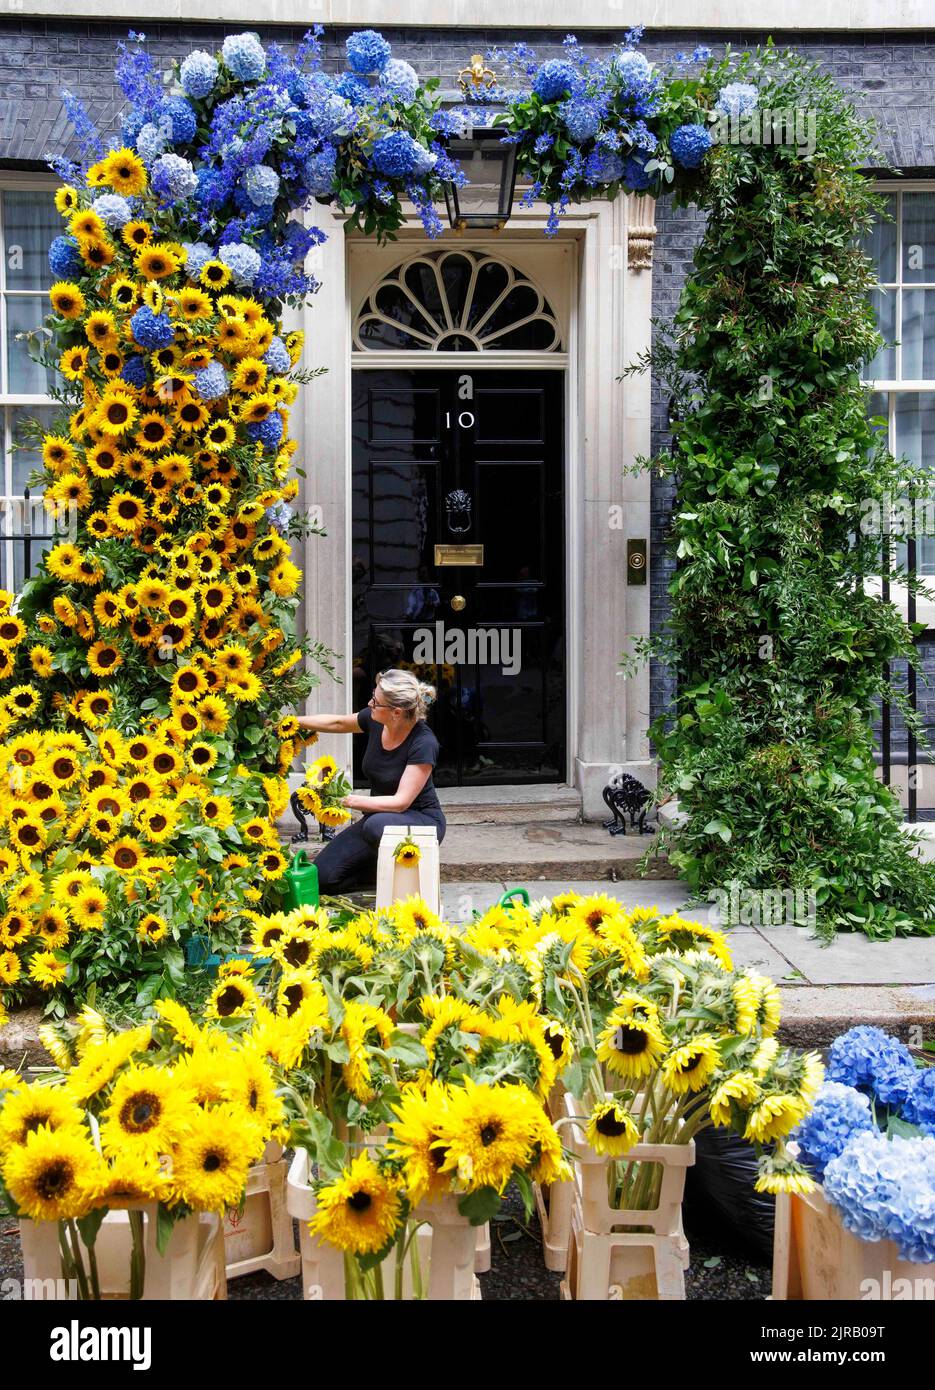 Londra, Regno Unito 23 ago 2022The i ritocchi finali sono messi sull'esposizione floreale al numero 10 Downing Street per segnare il giorno di indipendenza per l'Ucraina che è domani, 24th agosto. Credit: Notizie dal vivo di Mark Thomas/Alamy Foto Stock